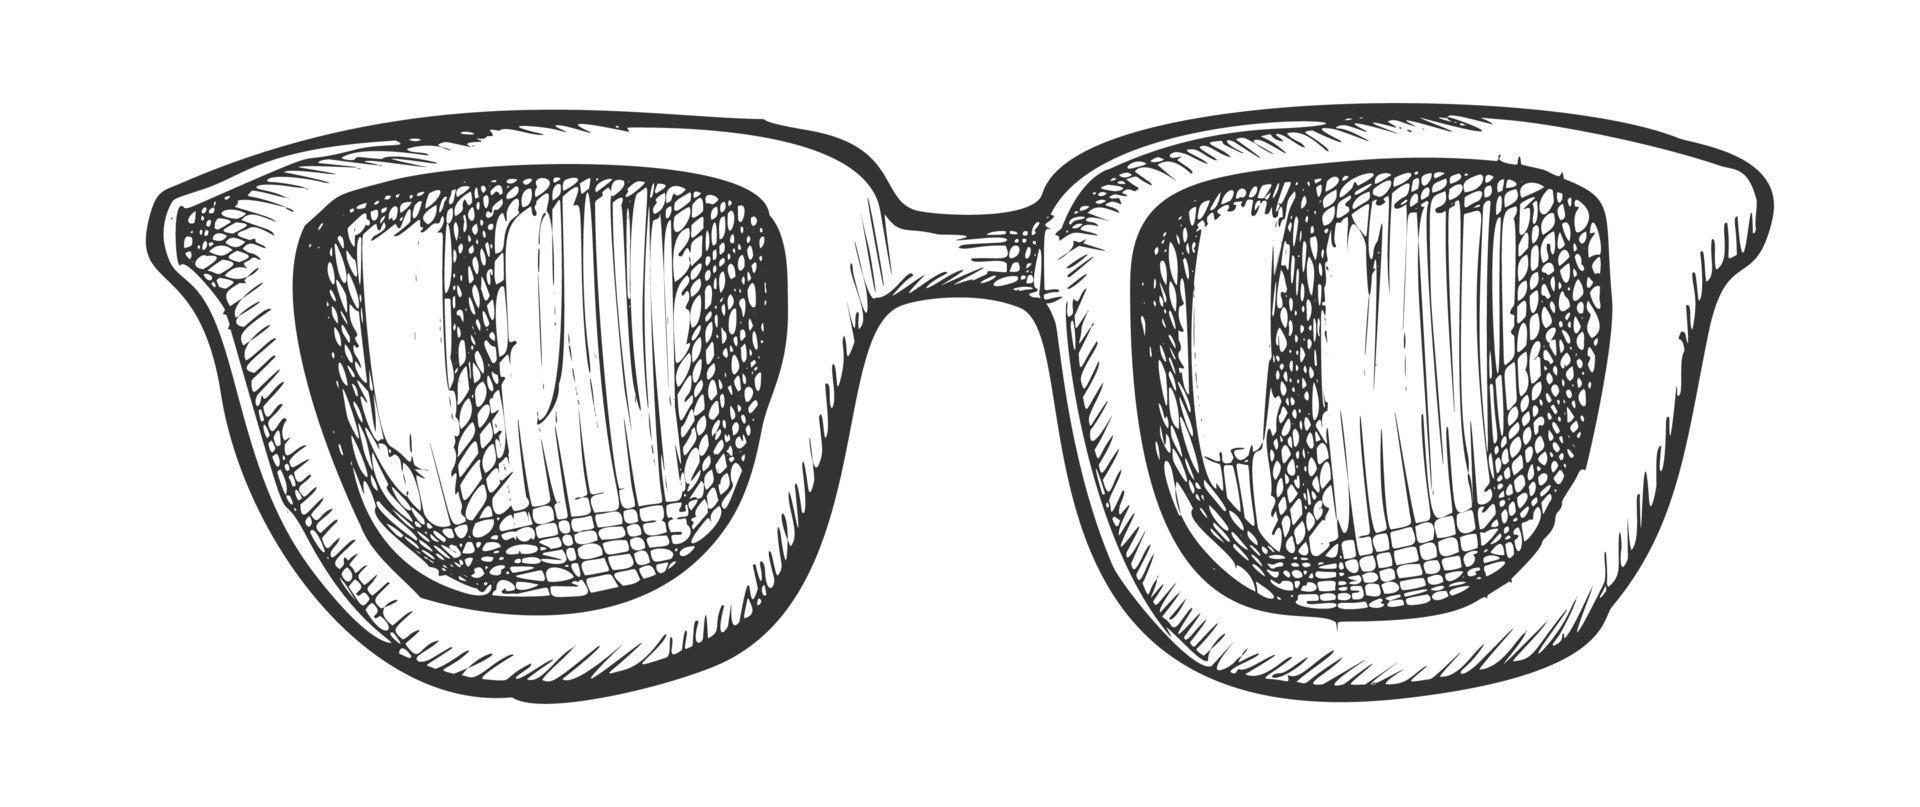 vecteur d'encre accessoire élégant lunettes bordées de corne